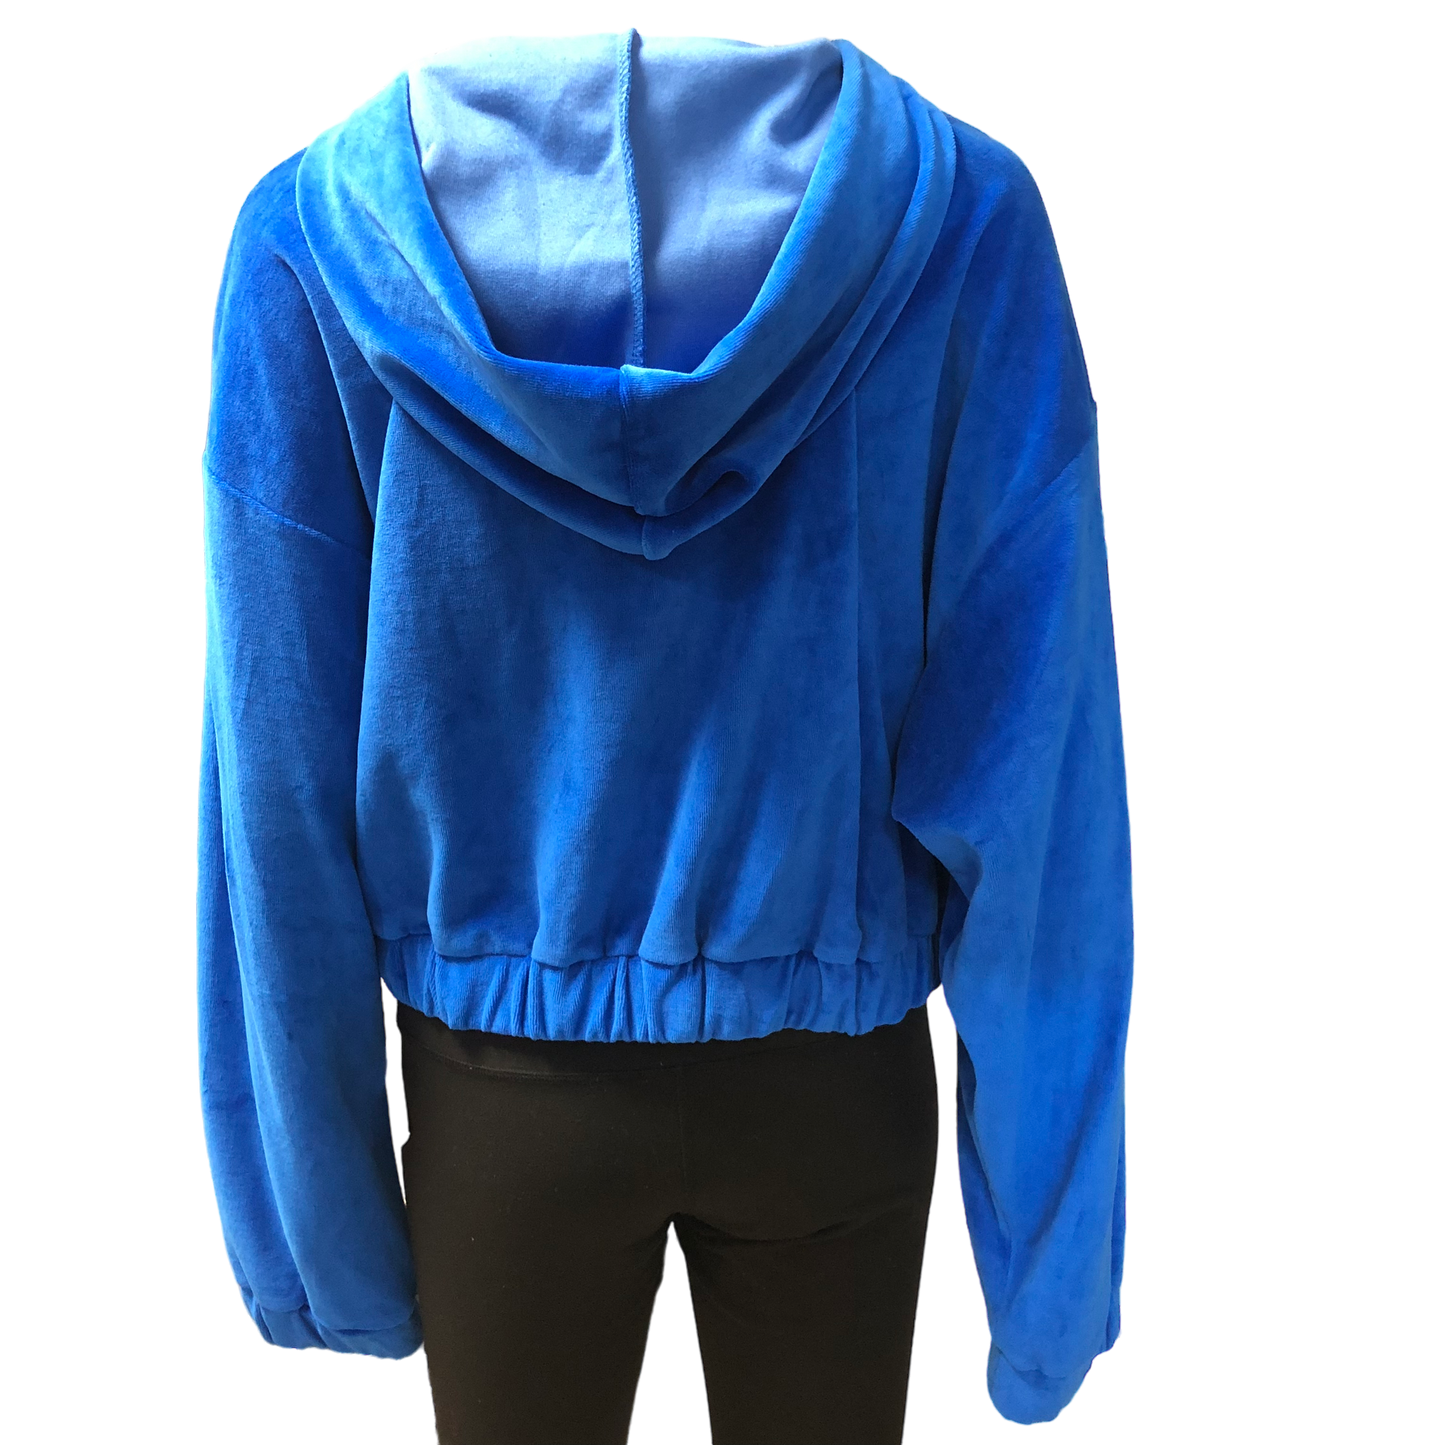 Jacket Windbreaker By Juicy Couture  Size: Xxl